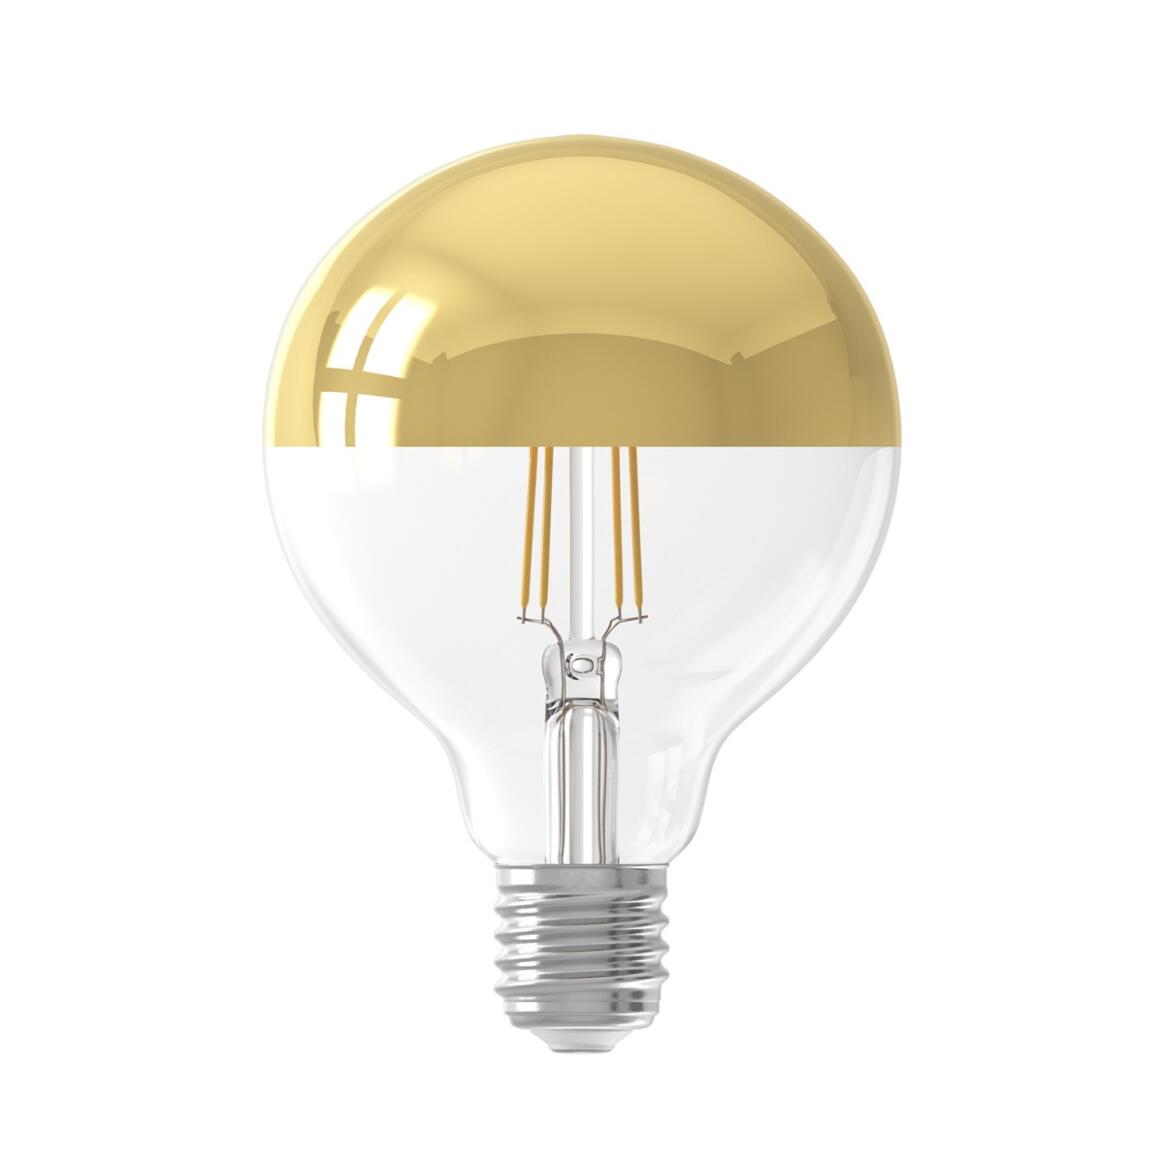 Ampoule LED à filament pour miroir /chrome variable d'intensité E27 4W 2300k 280lm 9.5cm main product image